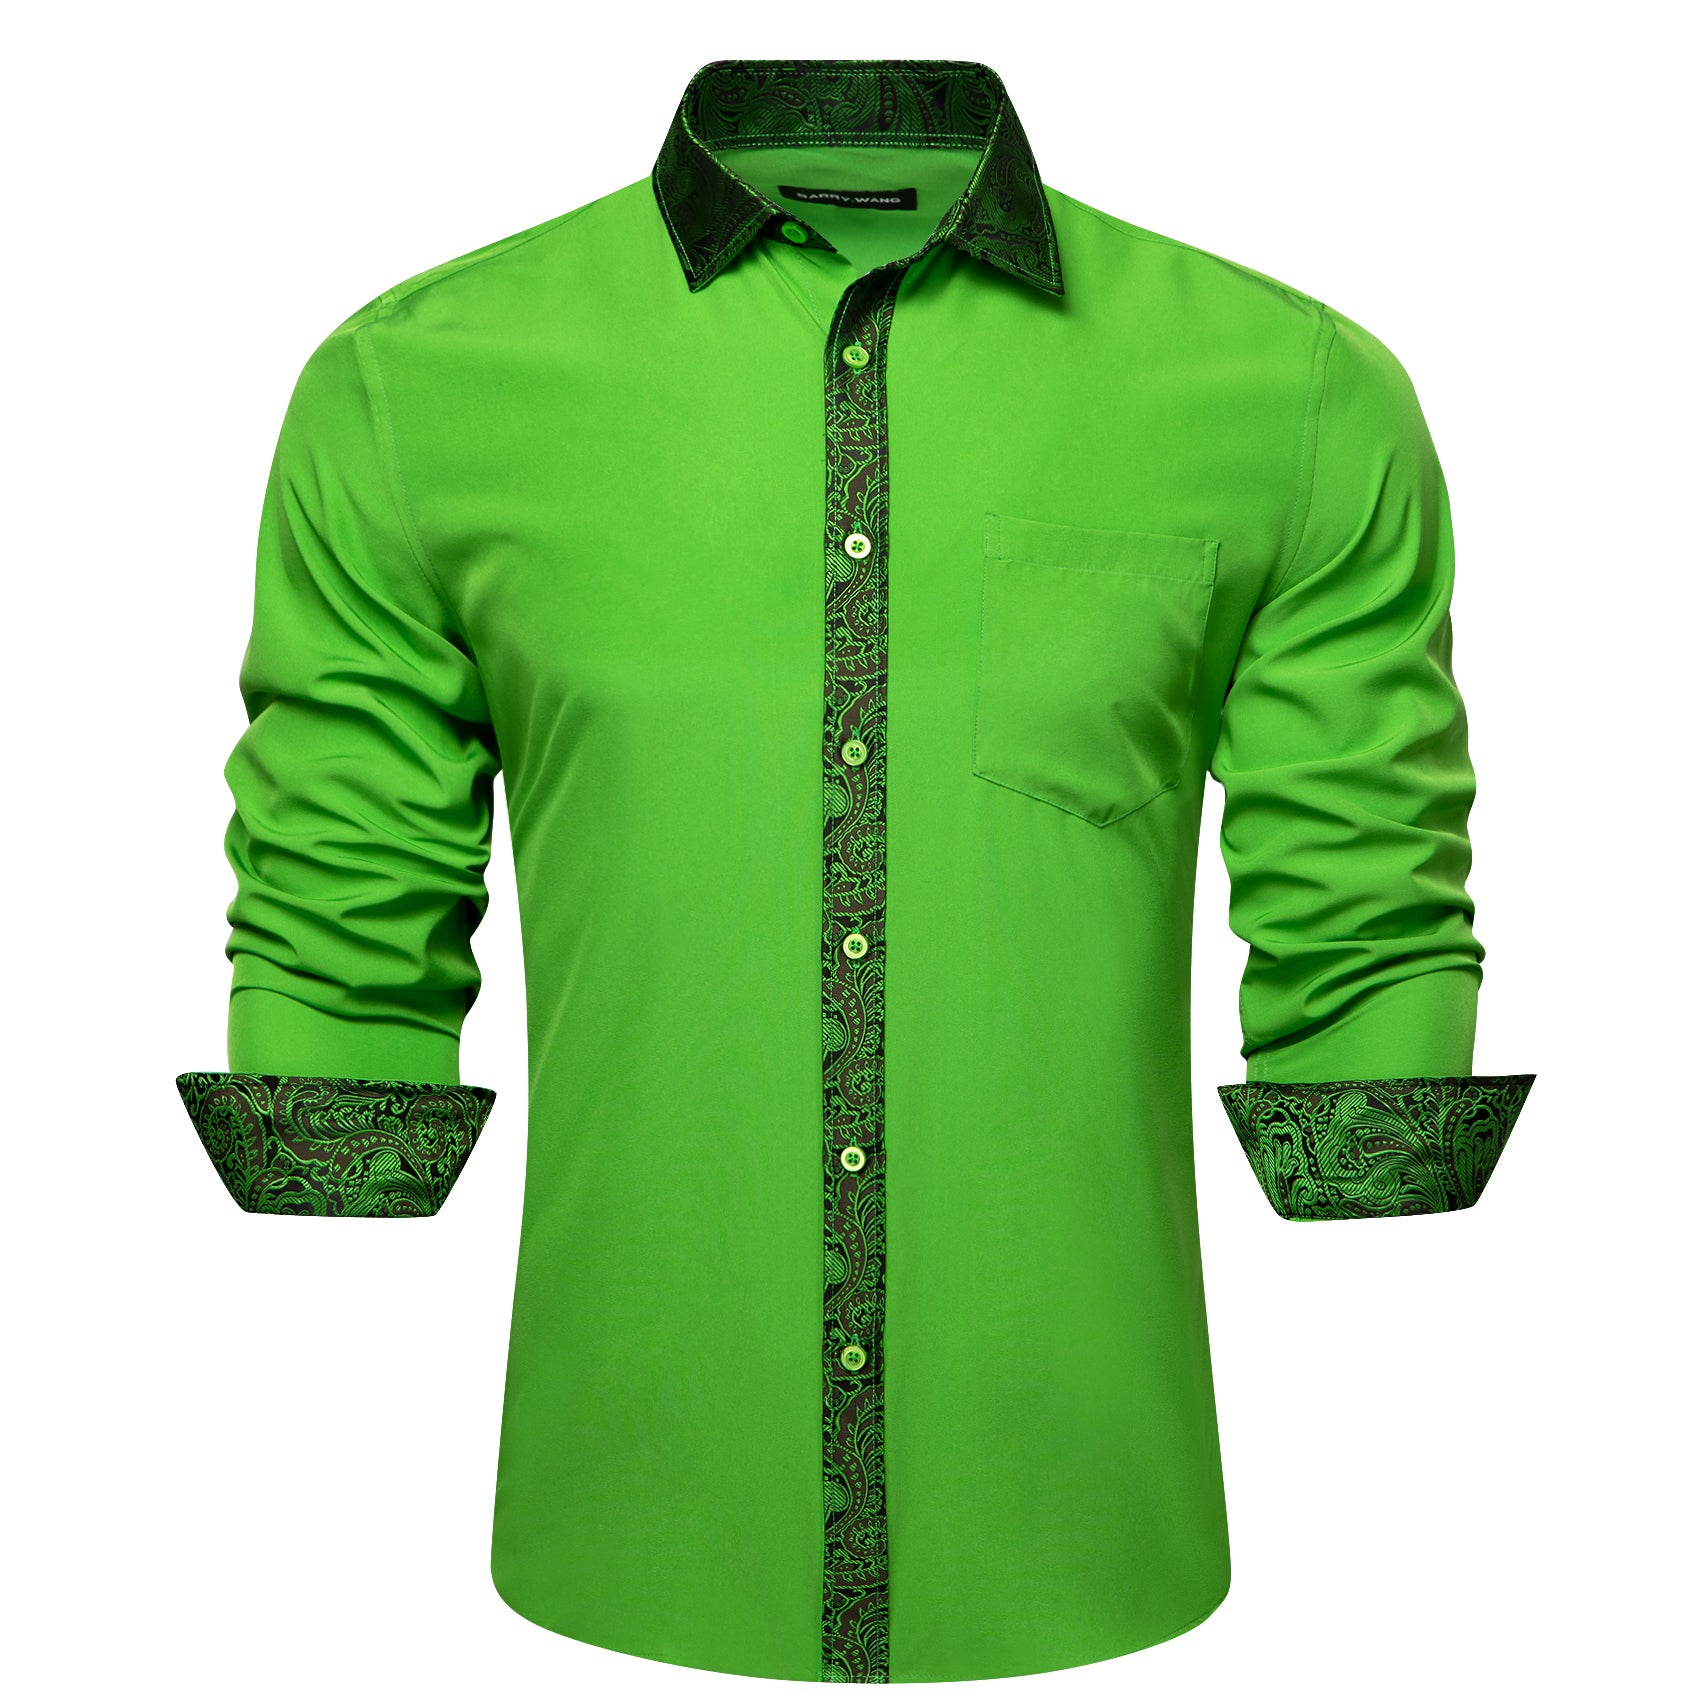 Barry.wang Light Green Splicing Men's Business Shirt